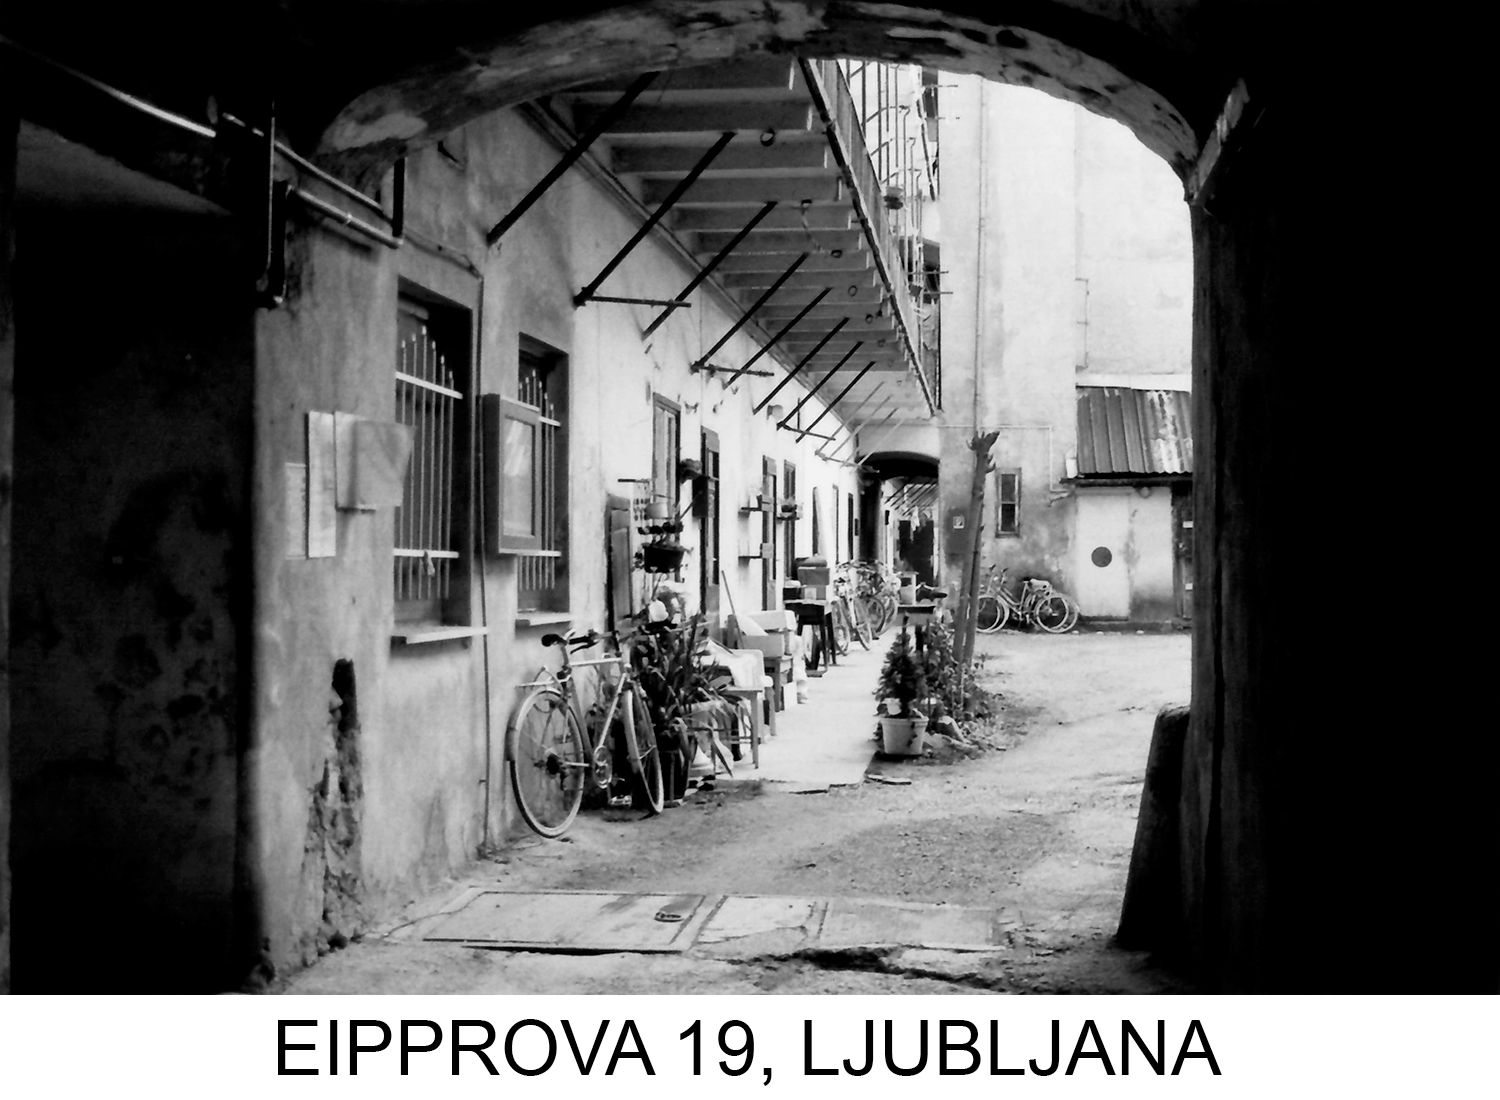 Eipprova 19, Ljubljana